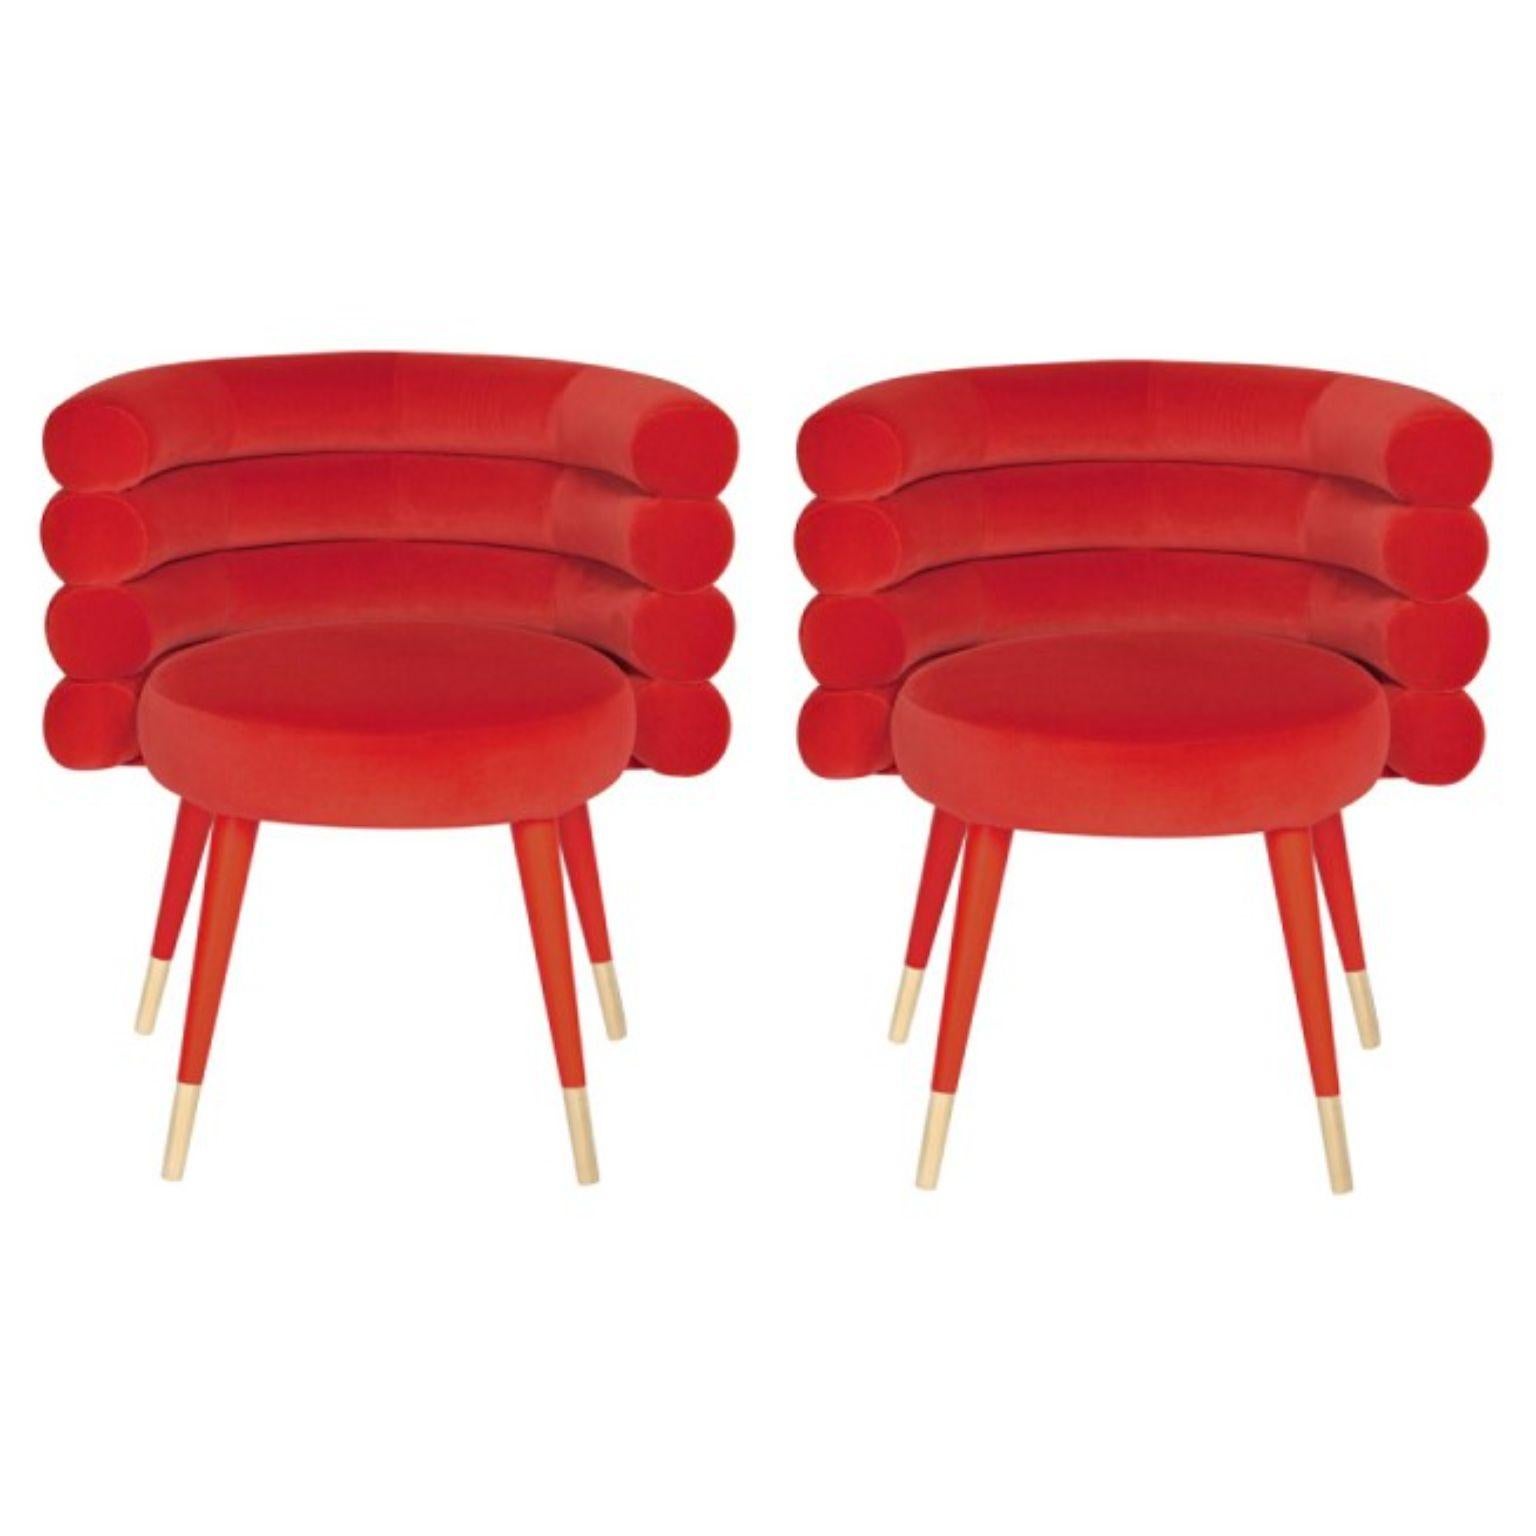 2 rote Marshmallow Esszimmerstühle von Royal Stranger
Abmessungen: 71 x 61 x H 74 cm. Sitzhöhe: 52 cm Sitztiefe: 48 cm.
MATERIALIEN: Samtpolsterung und Messing.
Erhältlich in: Mintgrün, Hellrosa, Königsgrün und Königsrot.

Royal Stranger ist eine